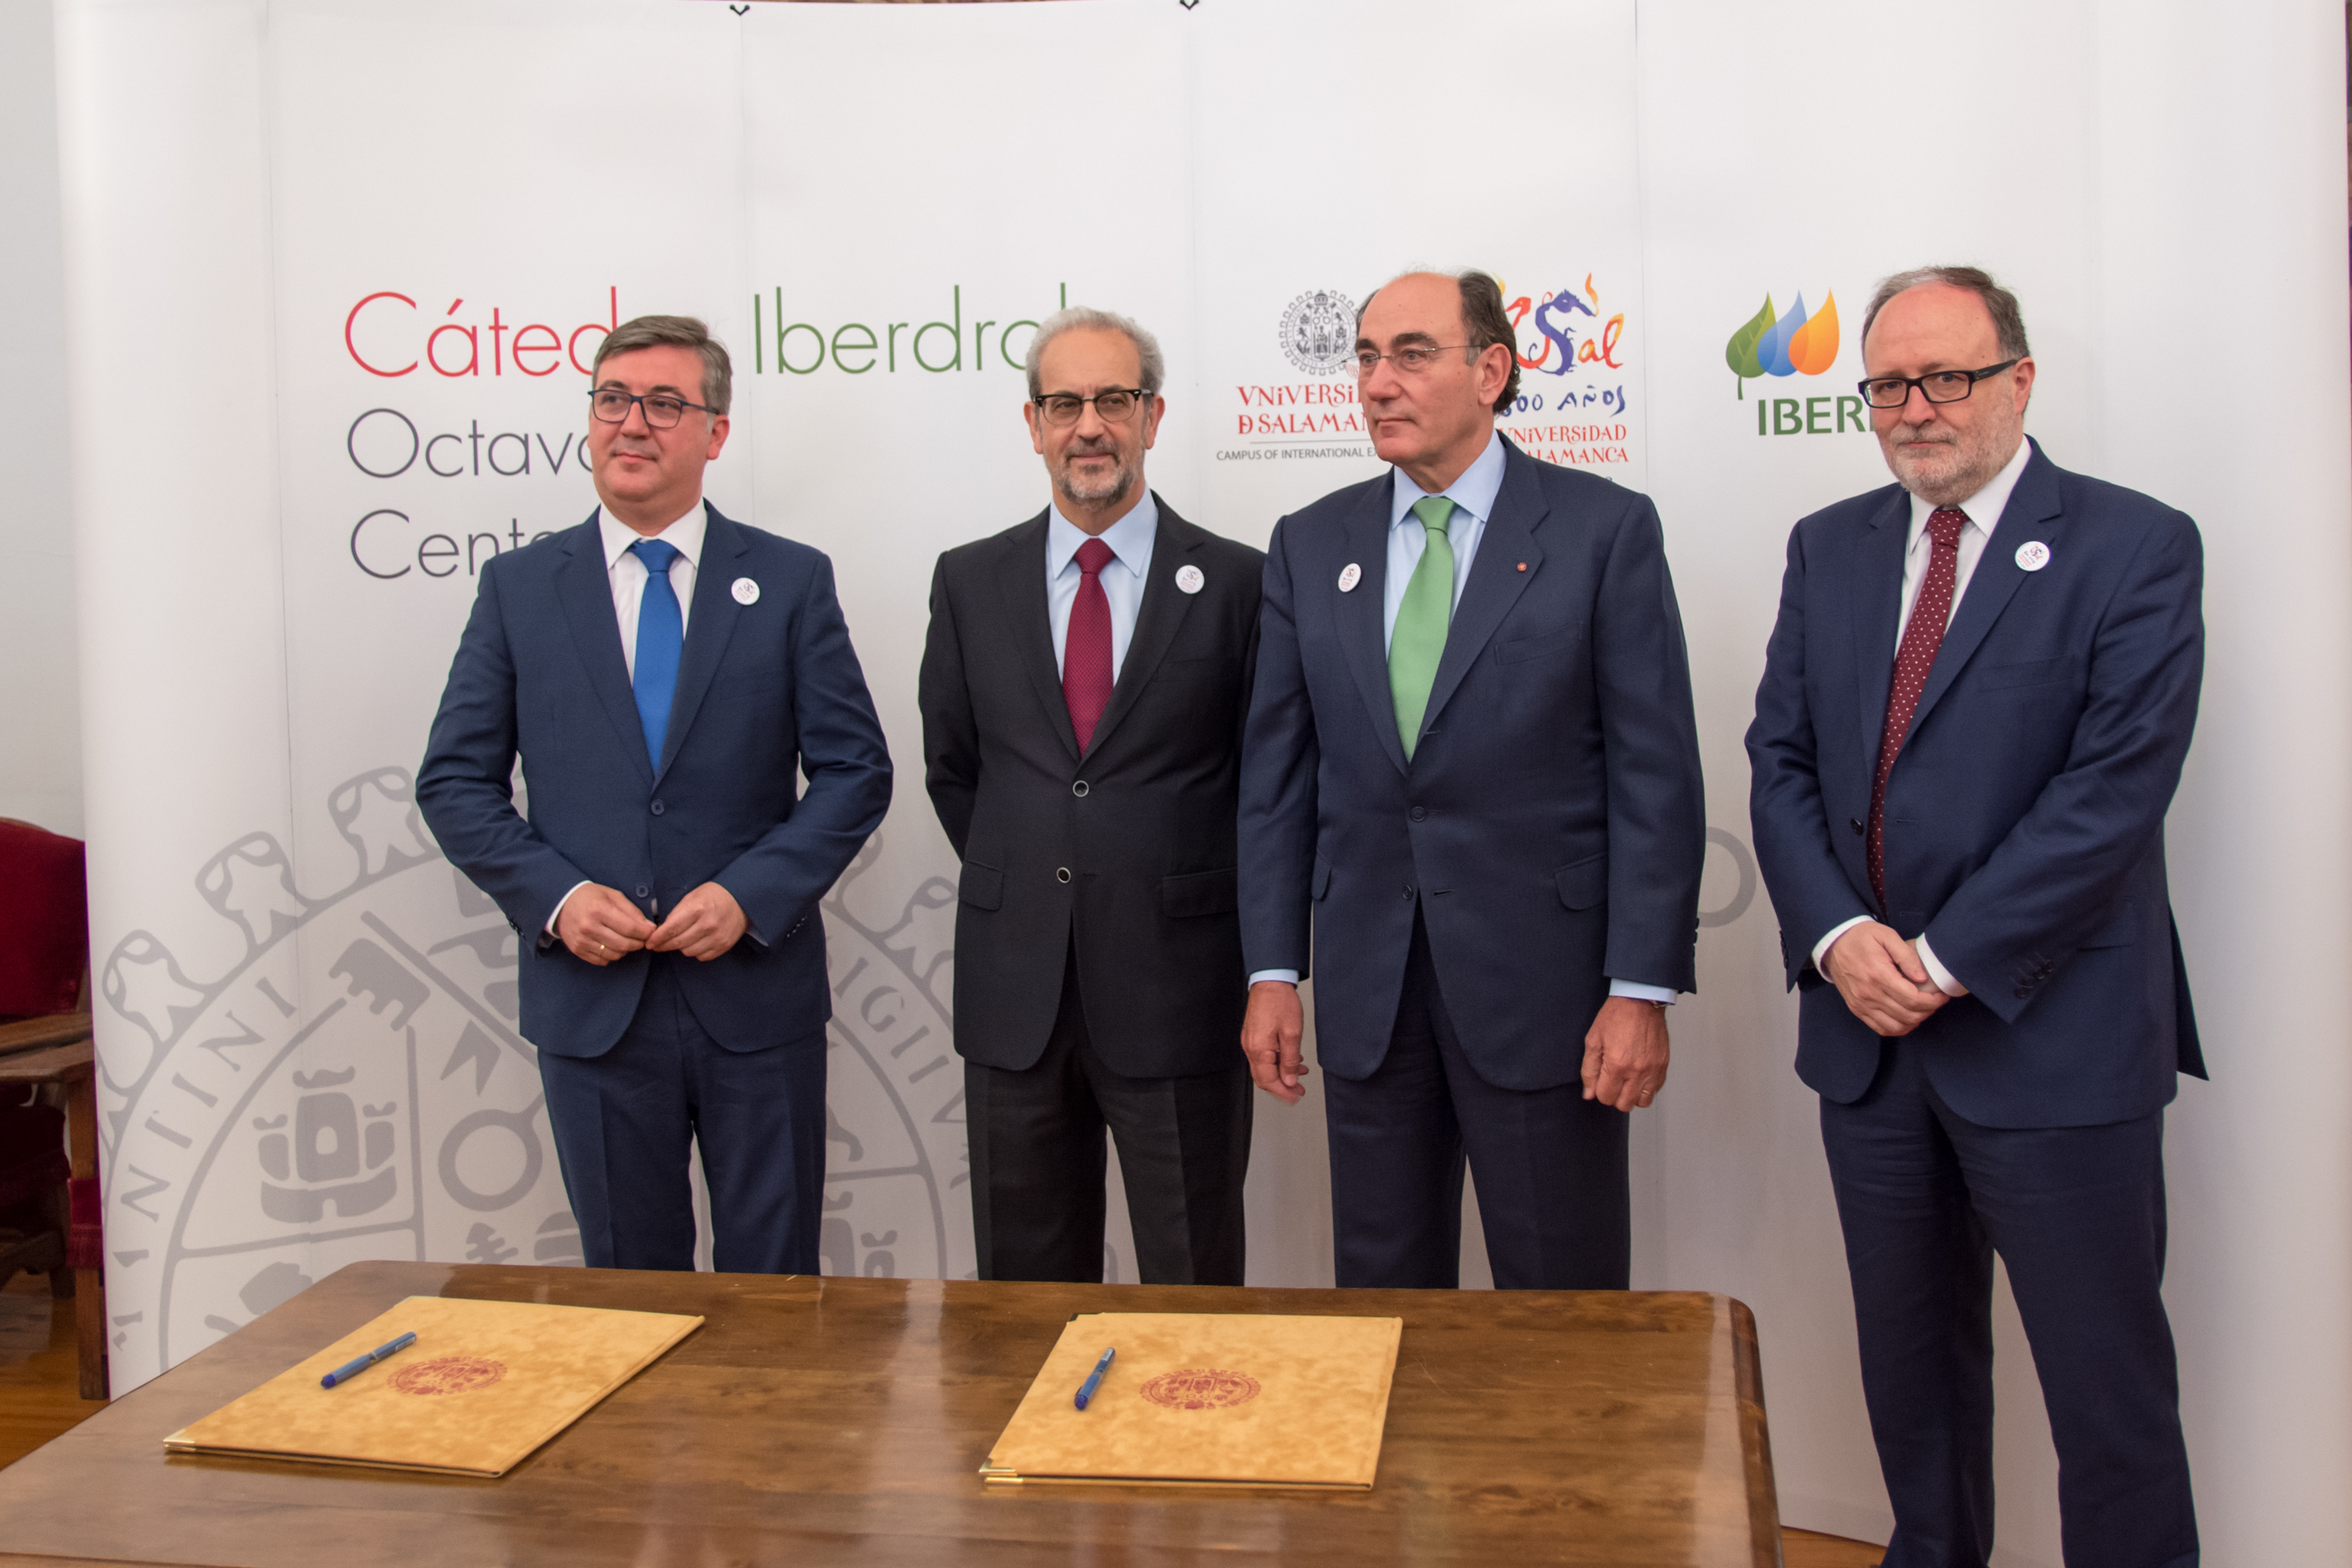 La Cátedra Iberdrola VIII Centenario de la Universidad de Salamanca impulsará la investigación en las áreas de la energía y la sostenibilidad